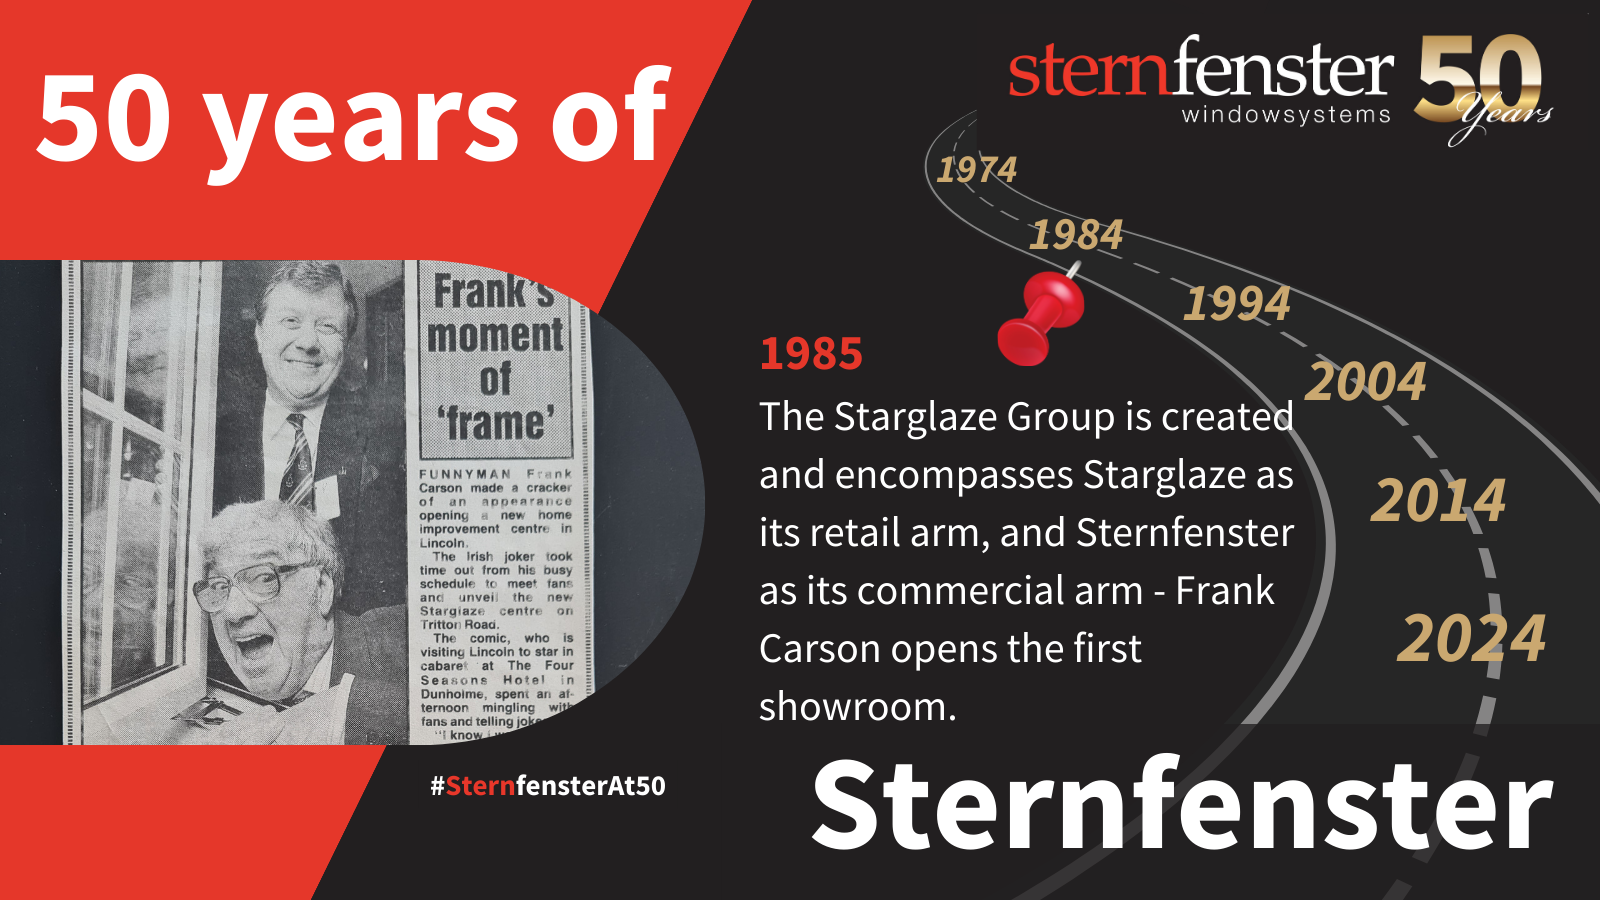 sternfenster history timeline